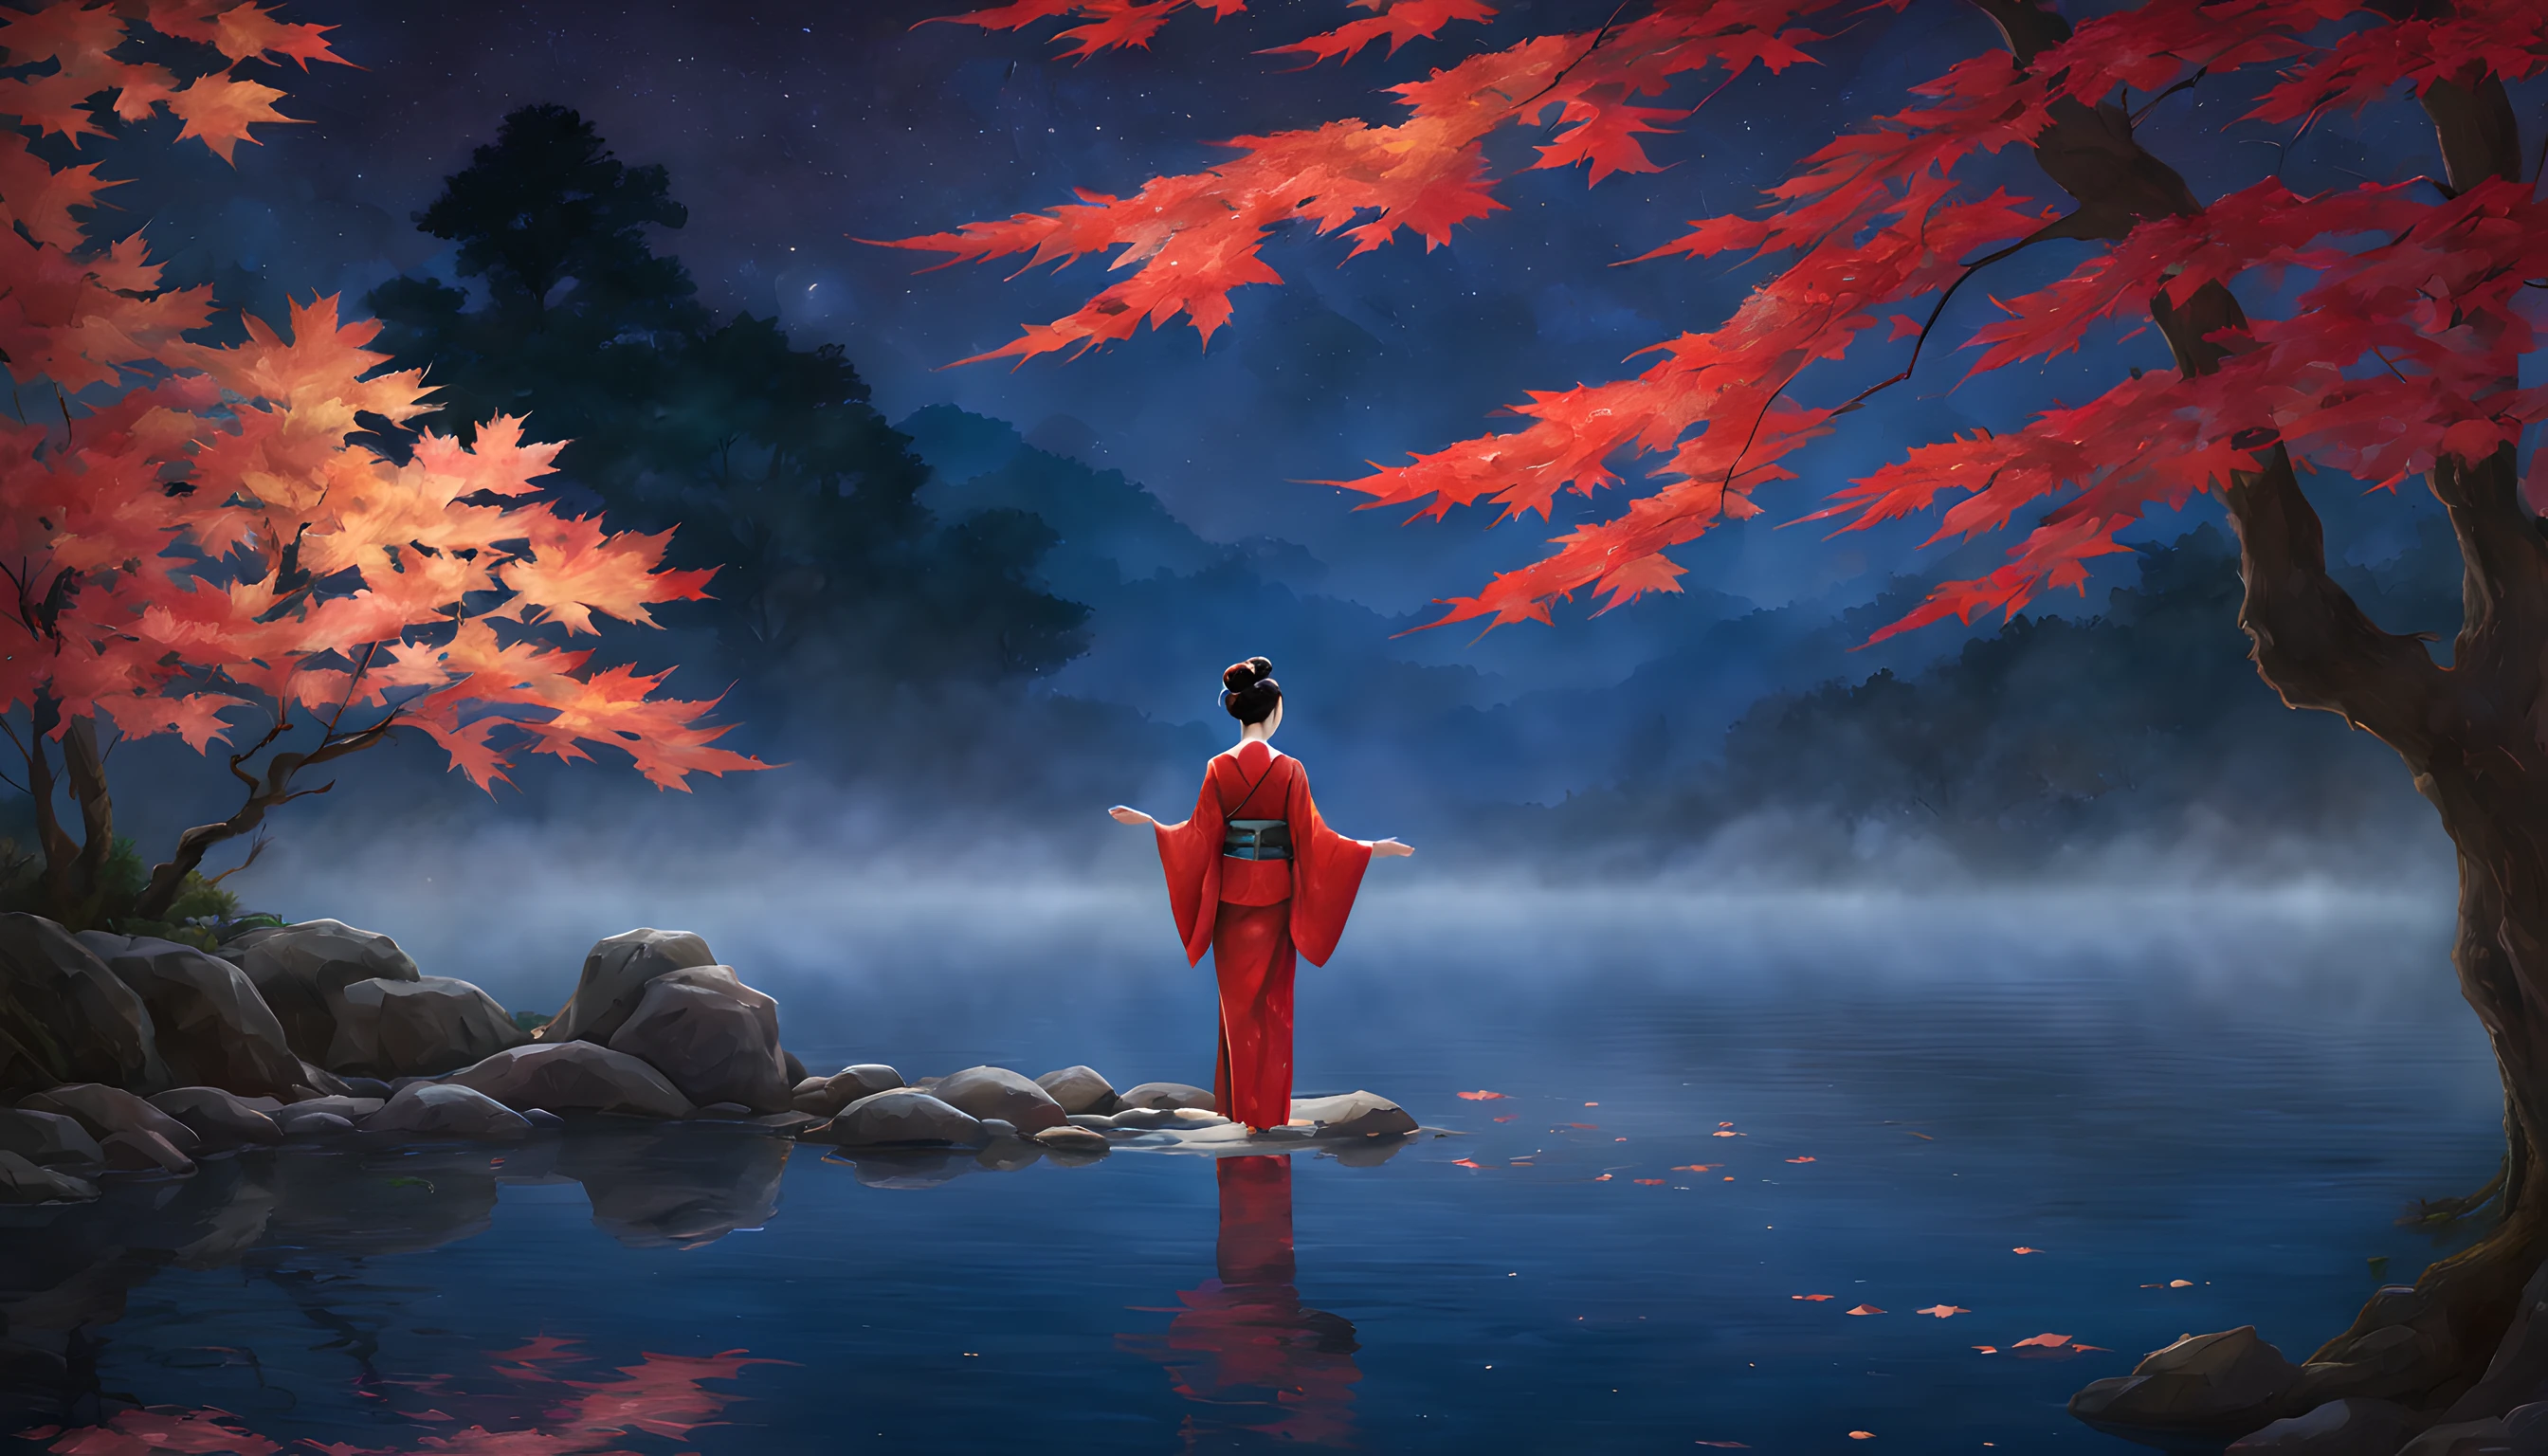 "燃えるような紅葉の色合いに包まれた静かな池を描いた魅惑的な夜のシーンを描きます。. 構図は、カエデの葉と近くに立つ雄大なカエデの木の目立つ部分を強調するべきです。. 前景に, 40代の日本人女性が優雅に立っている, 鮮やかな赤い着物をまとった. 着物が彼女の優雅さを際立たせている, 彼女の美しさは月明かりの下で輝きます. 彼女は時代を超えた魅力の持ち主です, 季節の真髄を捉える. 女性はきらめく池を眺める, 紅葉の反射が水面に映る. 彼女の表情は穏やかな思索の表情である, 夜の静かな美しさに浸りながら. 背景には壮大なカエデの木が描かれている, 枝には月光を捉えたような輝く葉が飾られている. 池は幻想的な光景を映し出す, その瞬間の魅力をさらに高める. 全体的な構成は、自然の美しさに対する静けさと畏敬の念を醸し出すものでなければならない。. この魅惑的な秋の風景画では、女性の魅惑的な美しさと紅葉の輝きが主役となるようにしてください。."